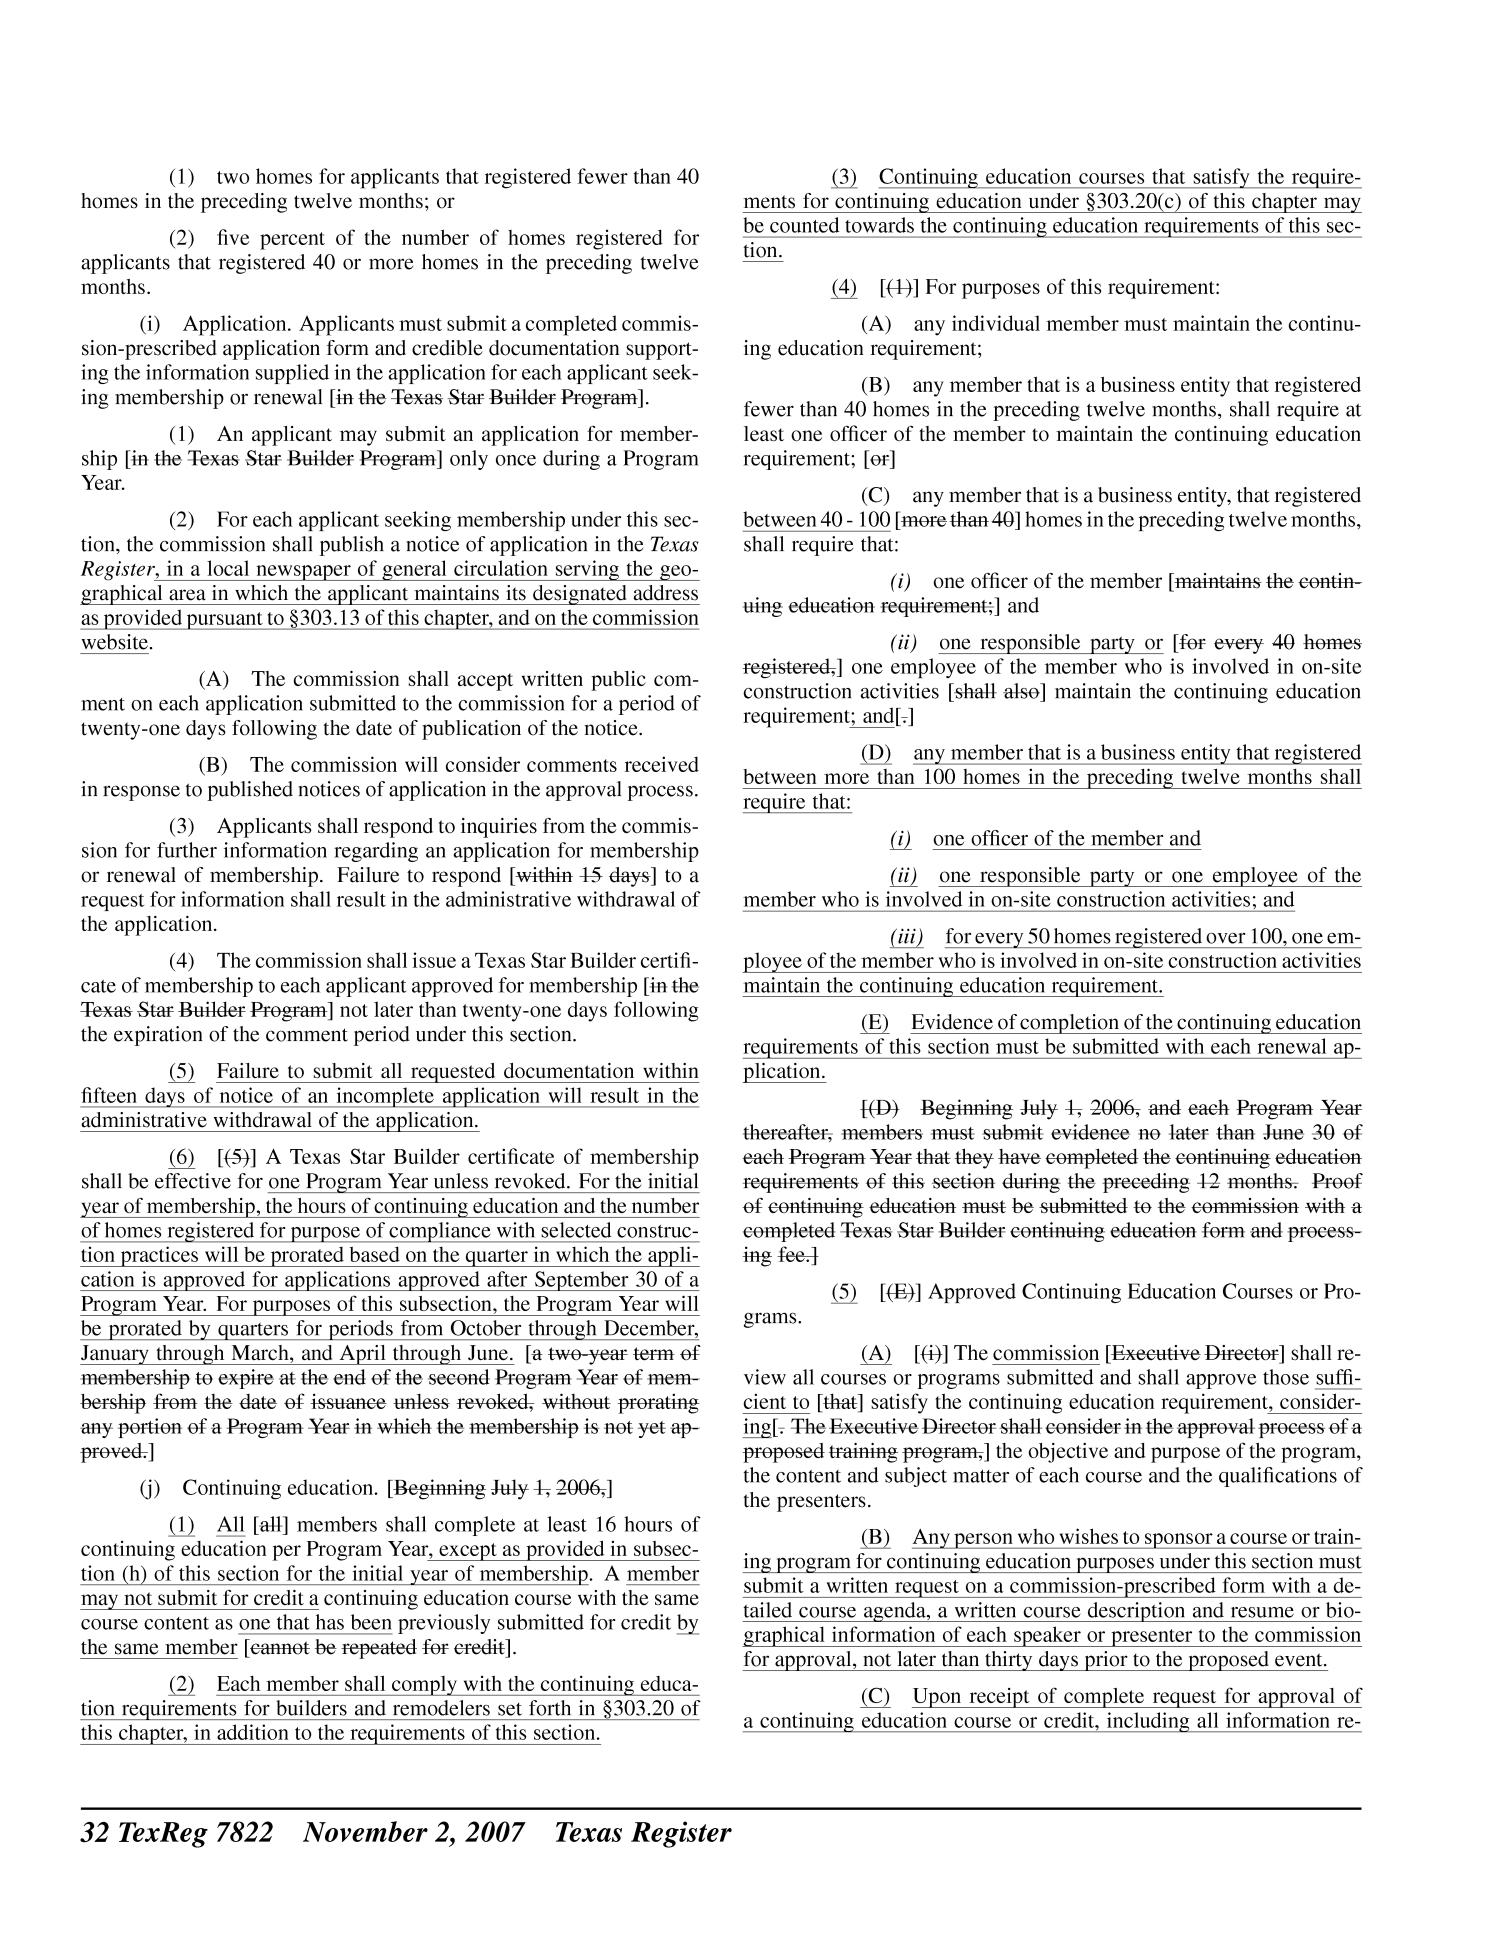 Texas Register, Volume 32, Number 44, Pages 7777-8060, November 2, 2007
                                                
                                                    7822
                                                